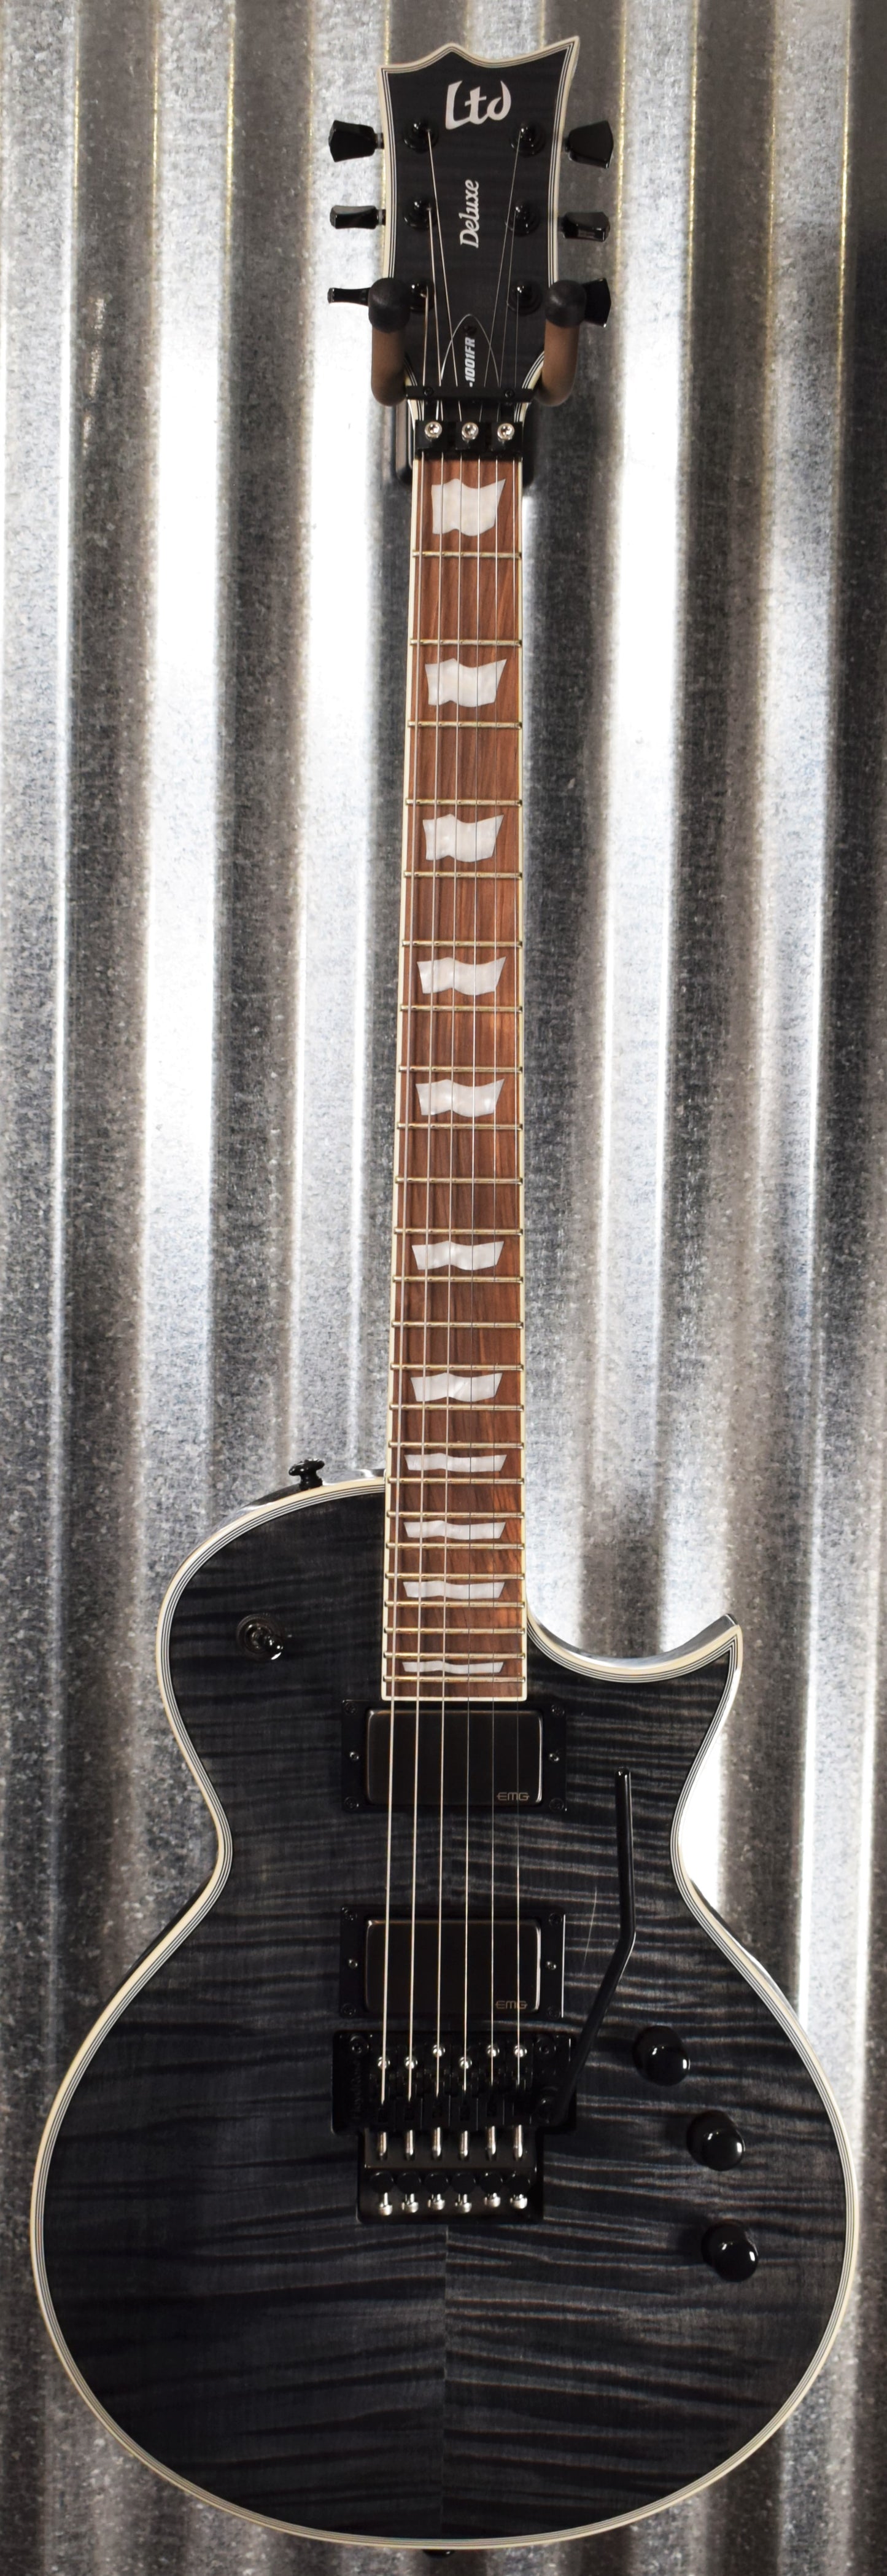 ESP LTD EC-1001 Flame See Thru Black EMG Guitar EC1001FRSTBLK Demo #1743